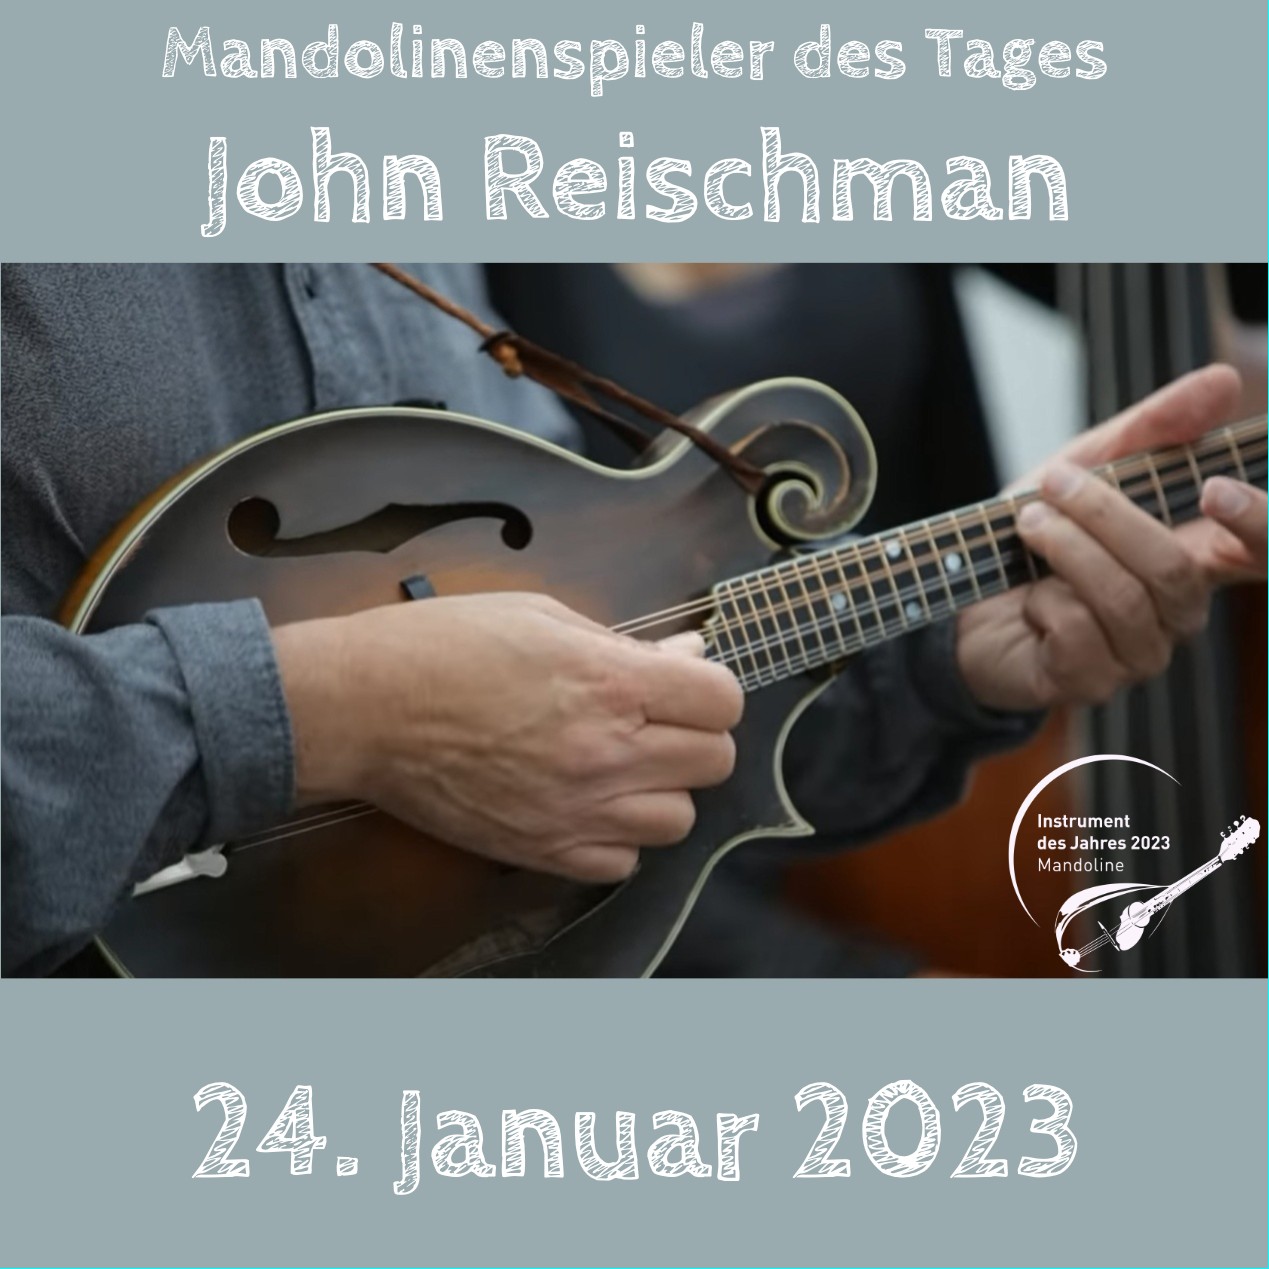 John Reischman Mandoline Instrument des Jahres 2023 Mandolinenspieler des Tages